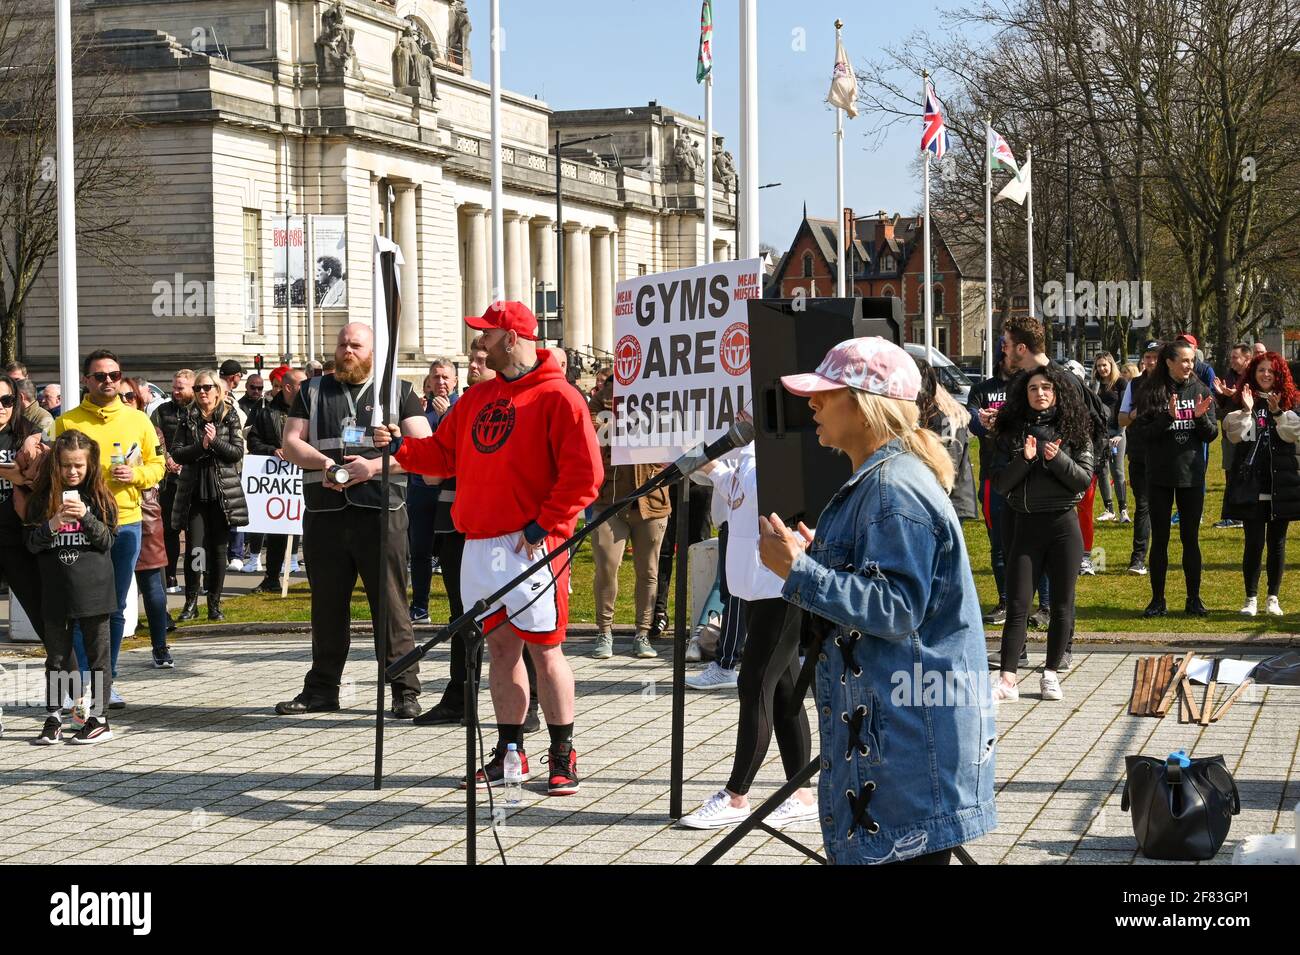 Cardiff, pays de Galles - 2021 avril : personne s'adressant à la foule lors d'une manifestation publique contre le verrouillage continu des gymnases Banque D'Images